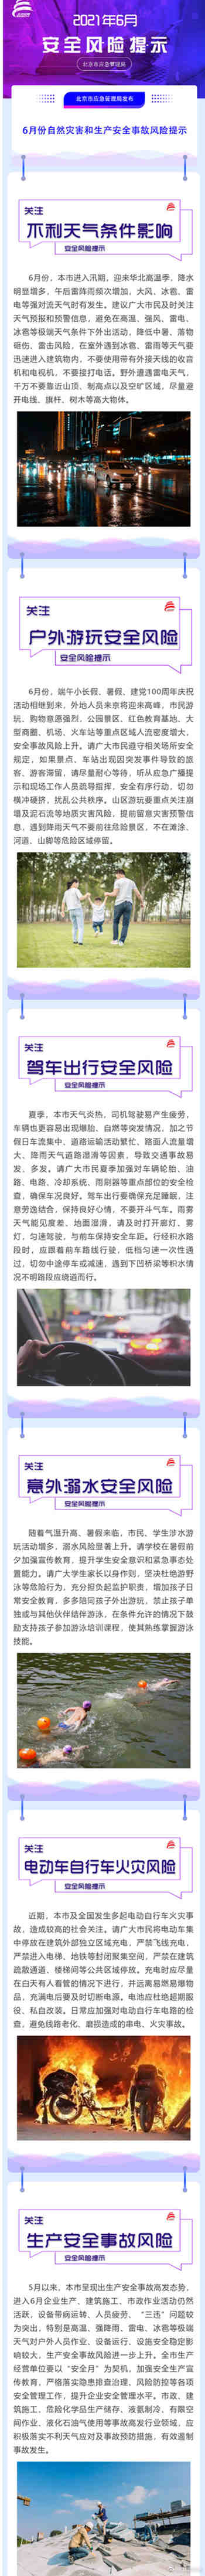 北京市应急管理局发布6月安全风险提示:降雨增多出行关注天气